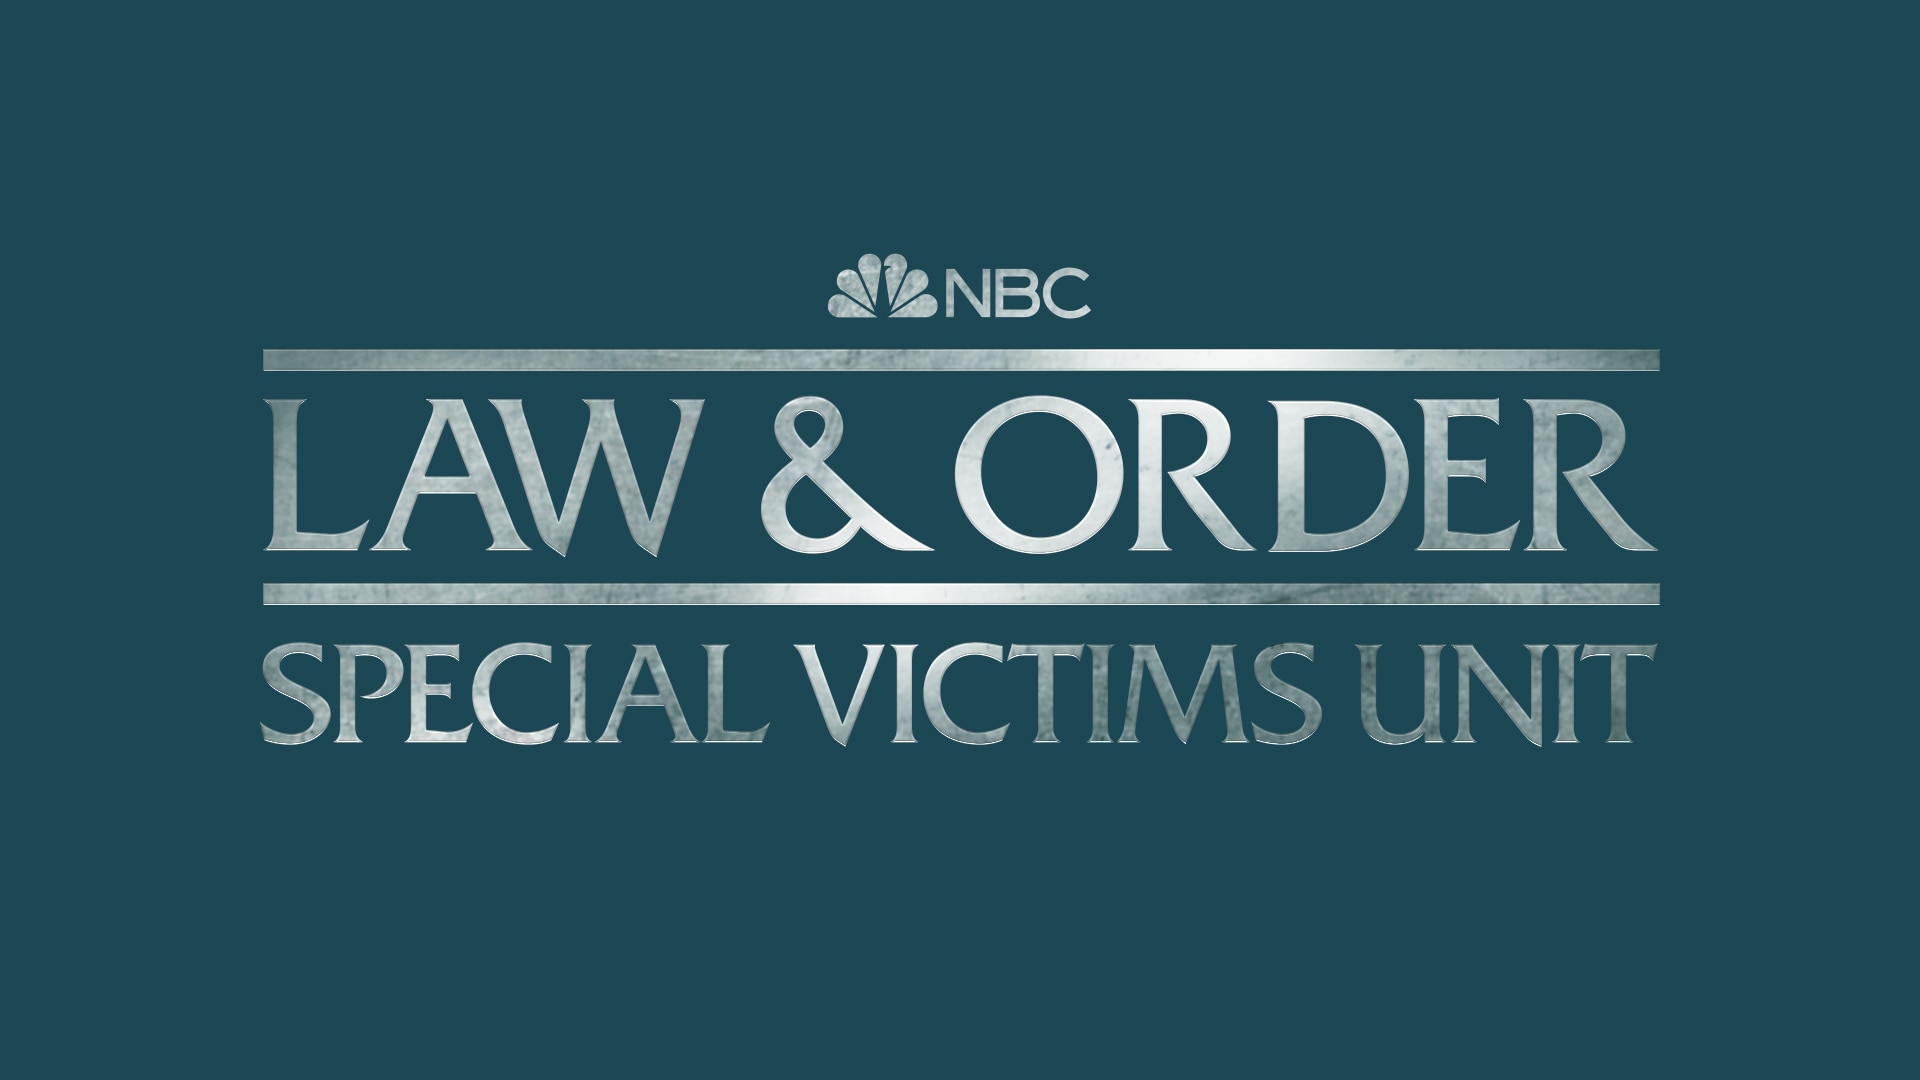 Law & Order: Special Victims Unit - NBC.com